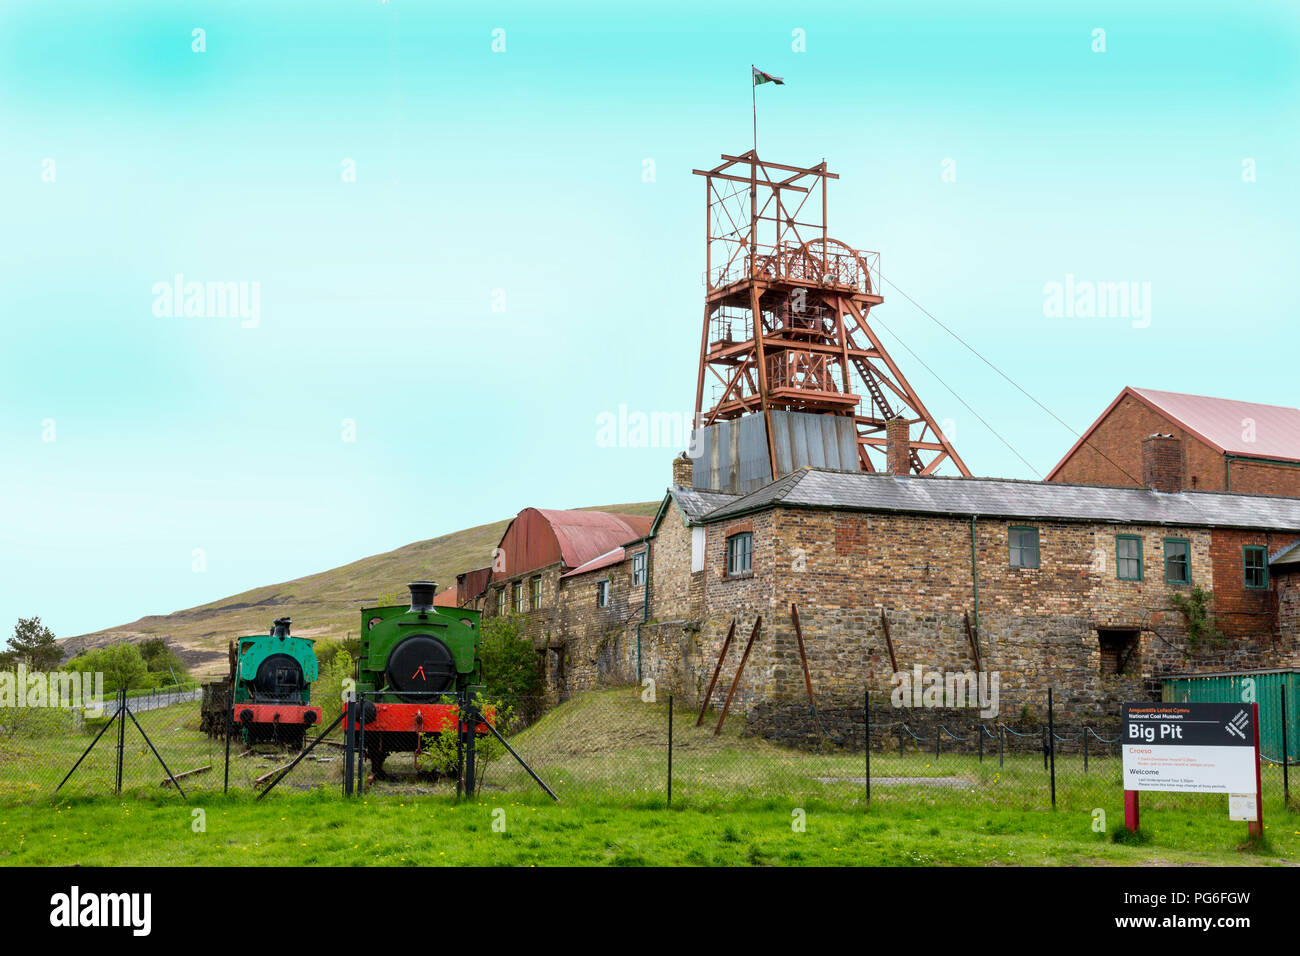 Der Förderturm und erhaltenen Dampfmaschinen im Big Pit - ein ehemaliges Bergwerk heute ein UNESCO-Welterbe in Blaenavon, Gwent, Wales, Großbritannien Stockfoto